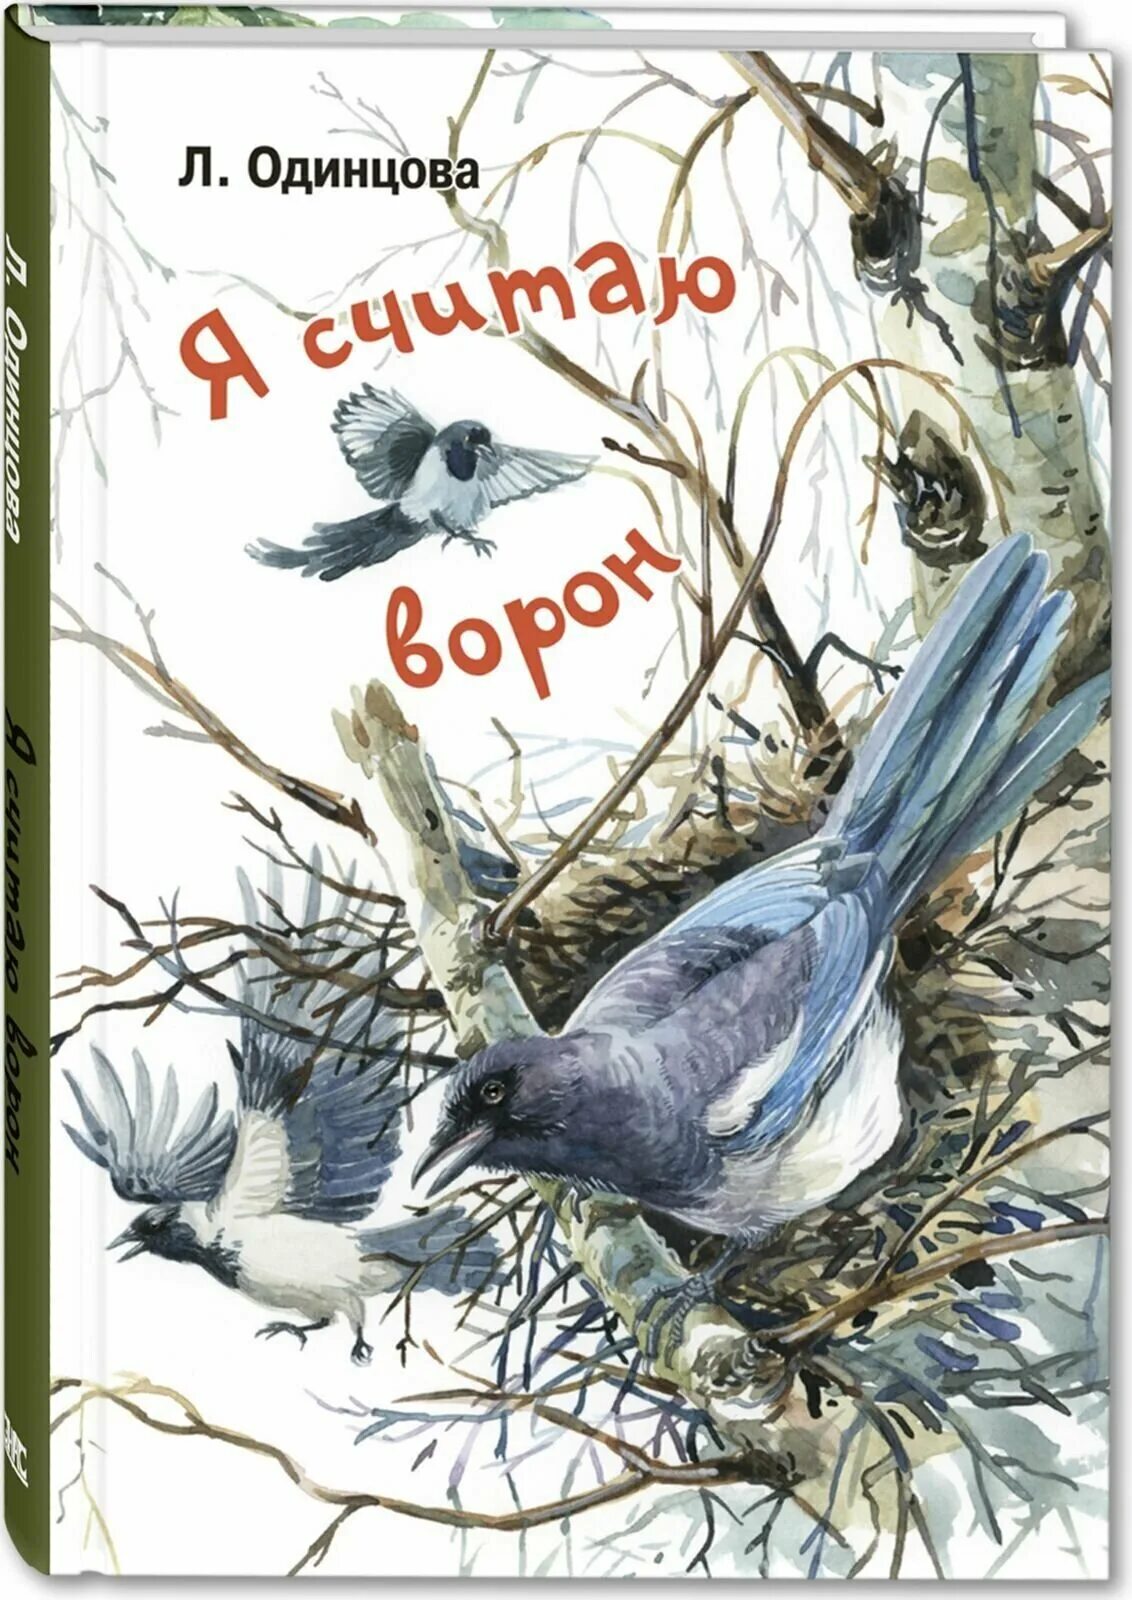 Книга про ворона. Одинцова, л. я считаю ворон : две истории из жизни птиц и людей. Одинцова л. "я считаю ворон". Книга о воронах.